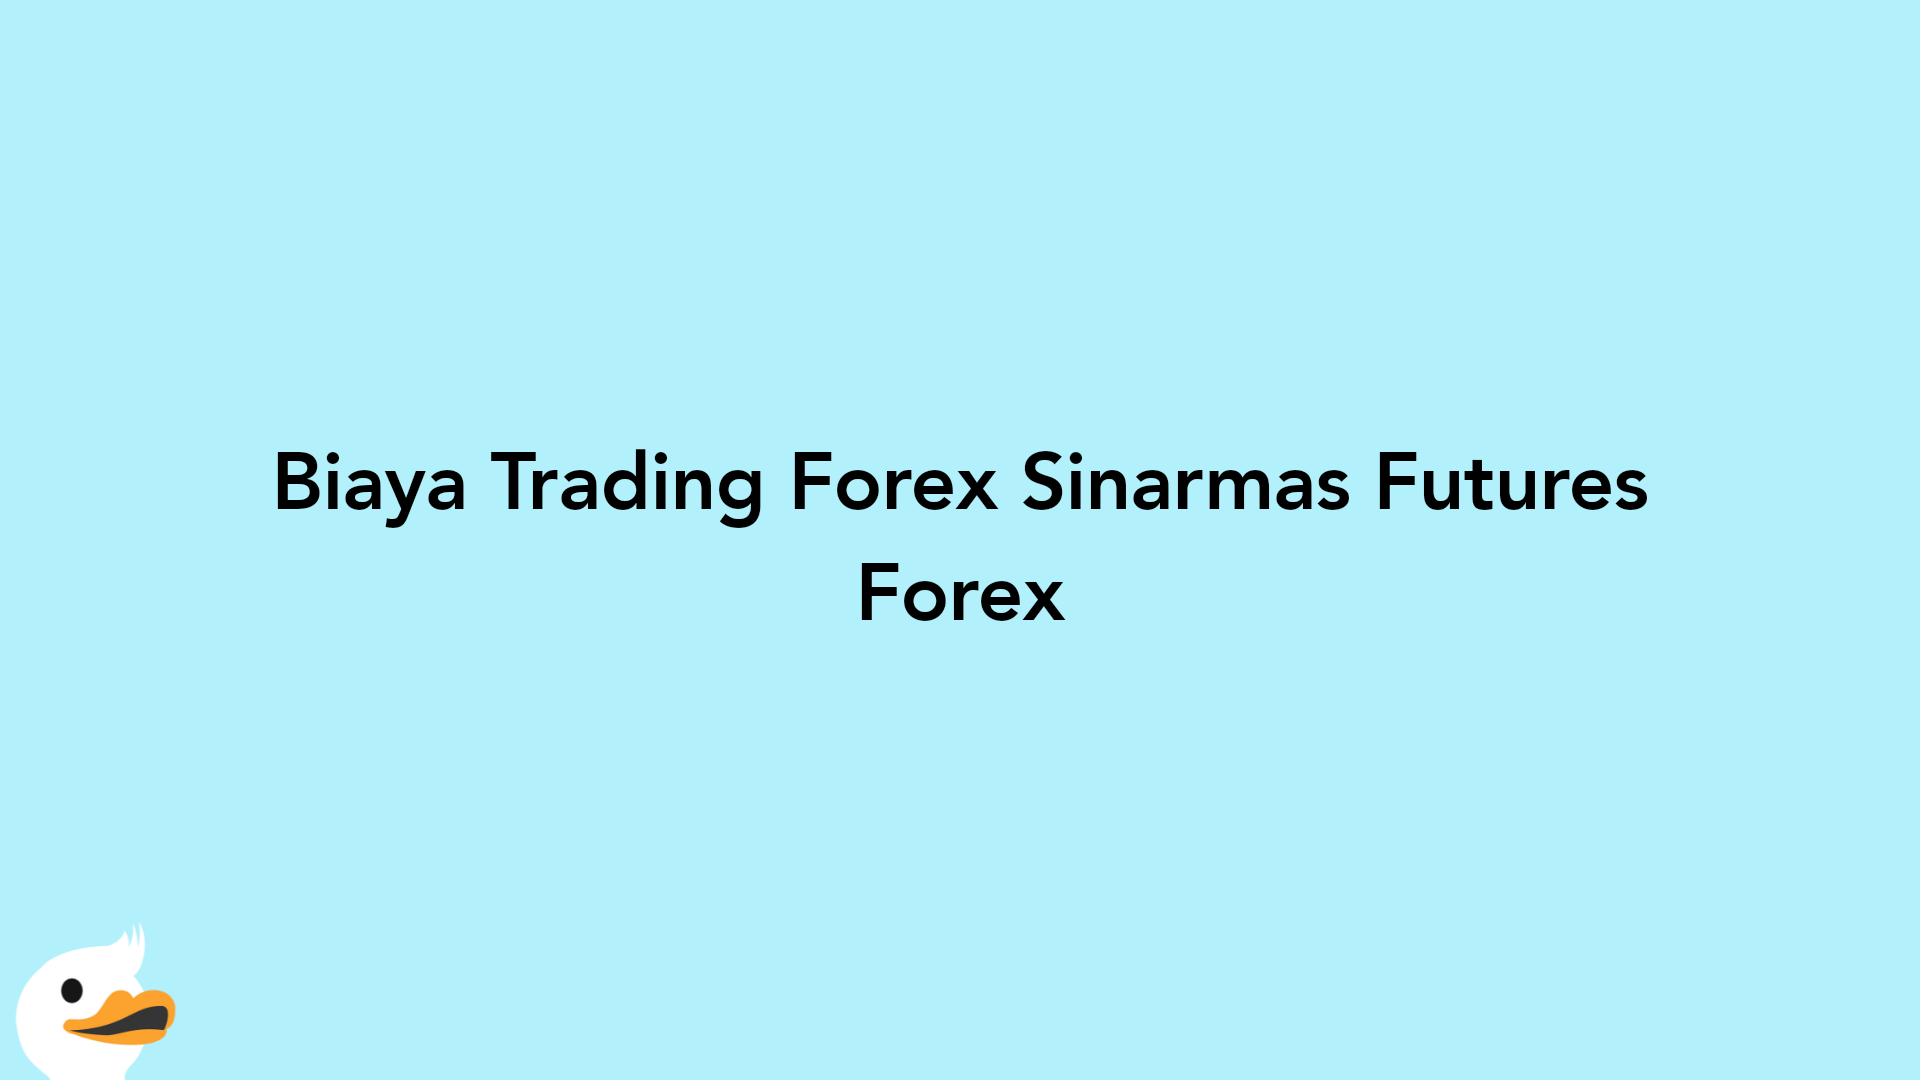 Biaya Trading Forex Sinarmas Futures Forex